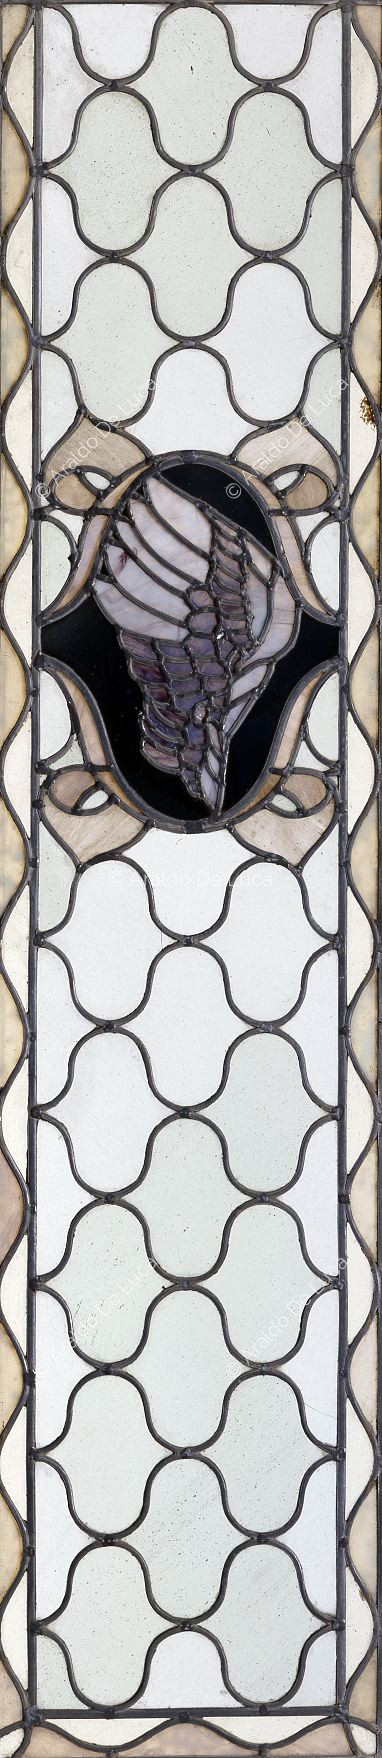 Buntglasfenster mit geometrischem Motiv